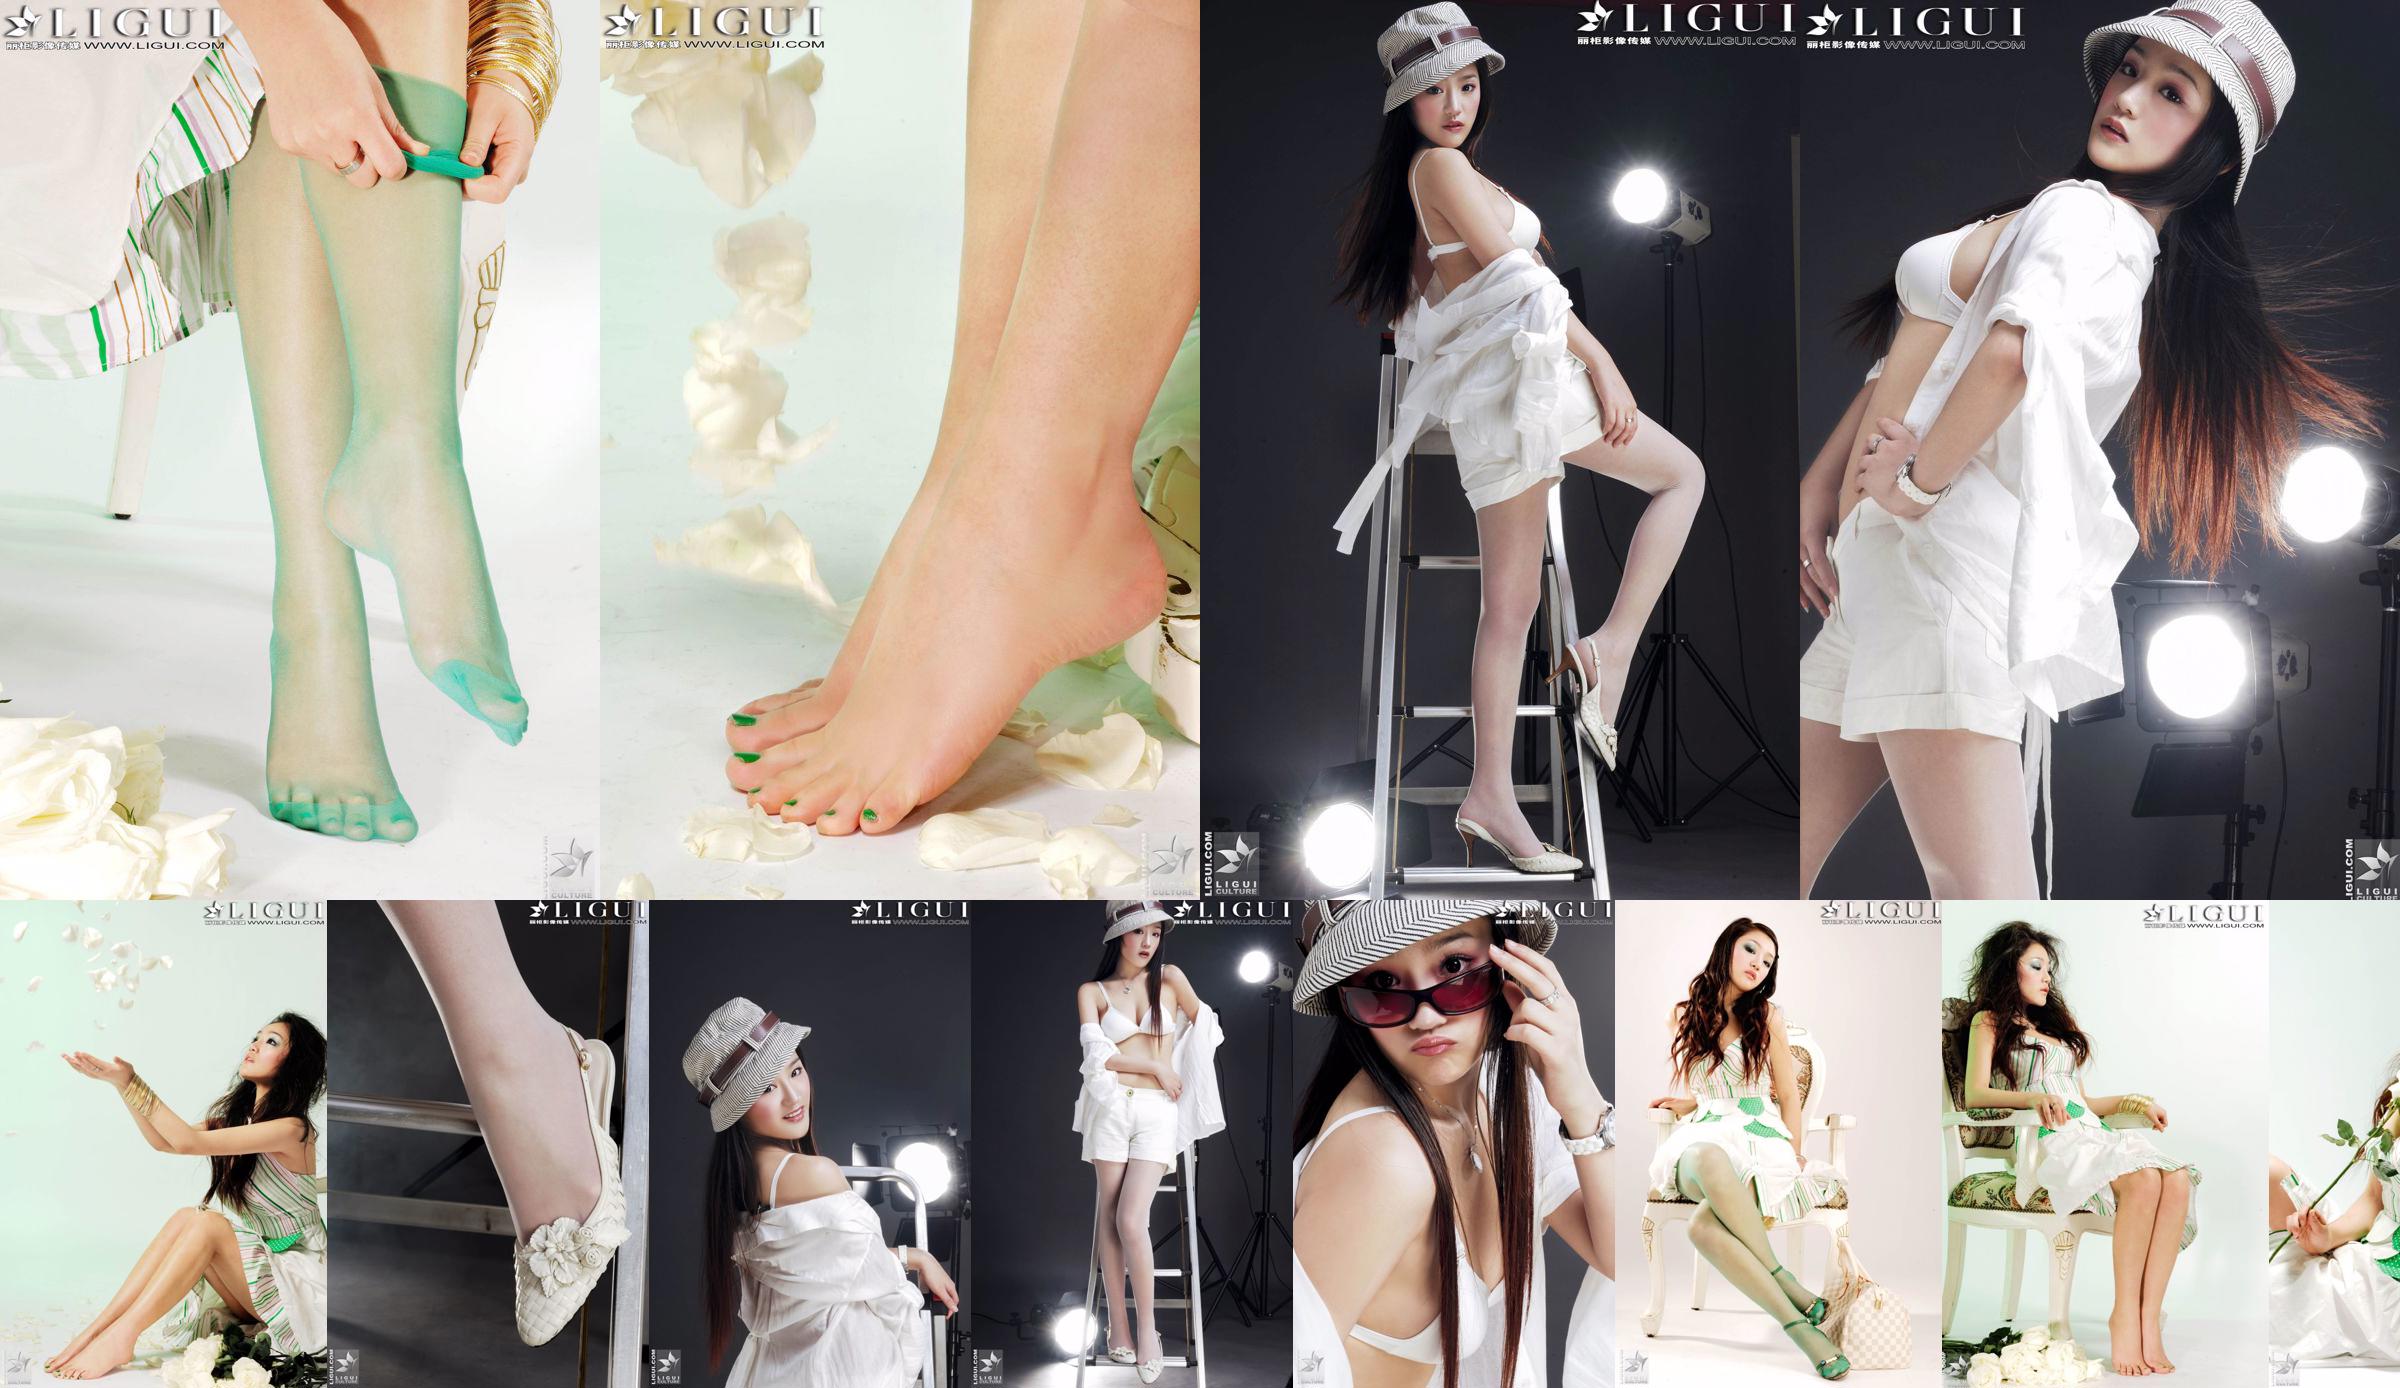 [丽 柜 贵 foot LiGui] Foto "Fashionable Foot" milik Model Zhang Jingyan tentang kaki dan kaki sutra yang indah No.bf560c Halaman 15